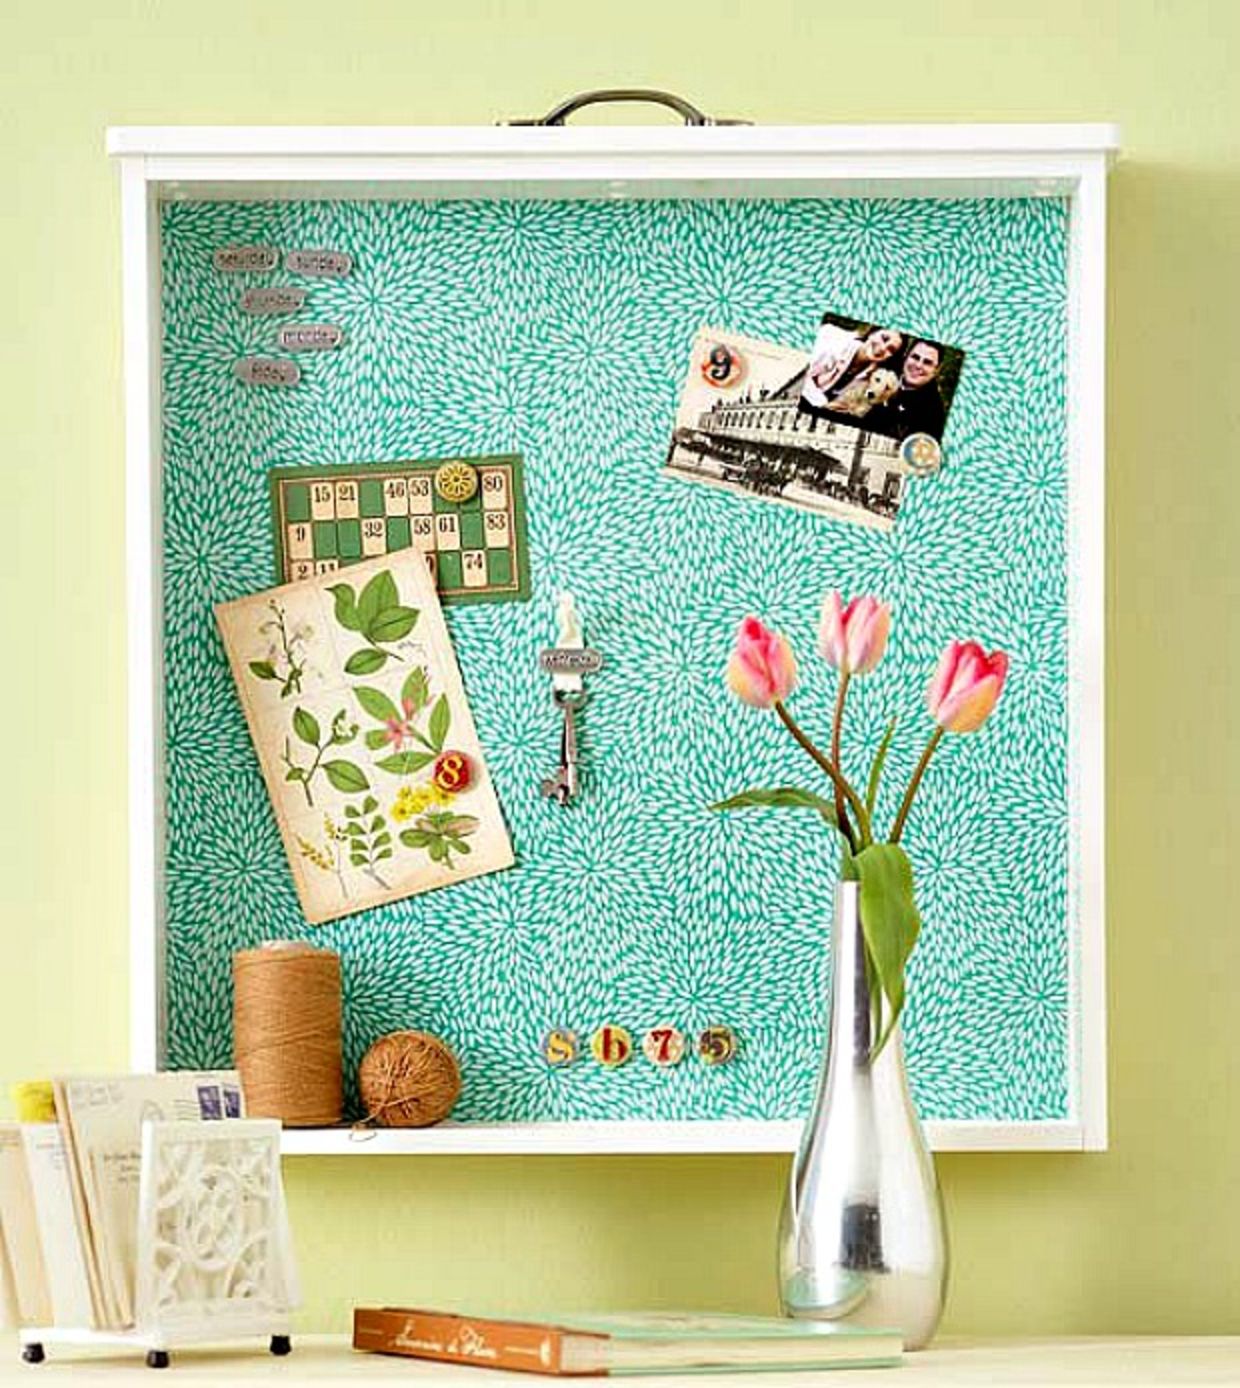 Upcycled bulletin board as a diy home decor idea